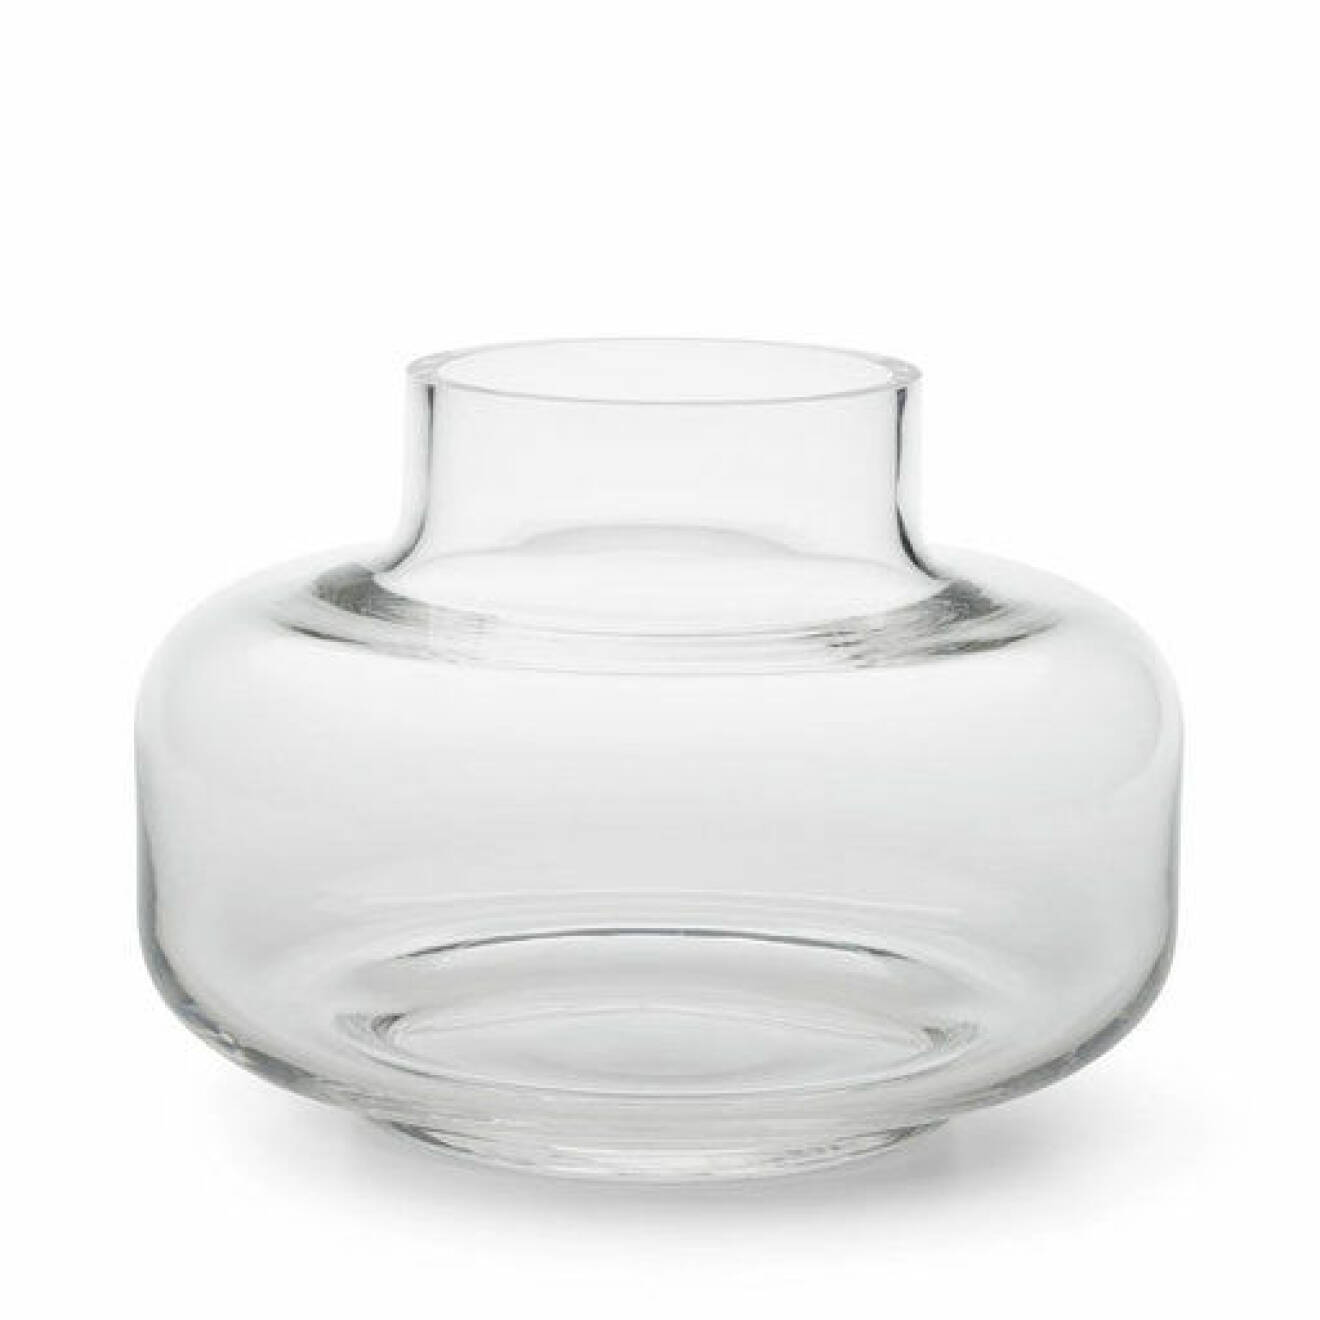 Glasvas i transparent glas i stor modell. Vas från Marimekko.